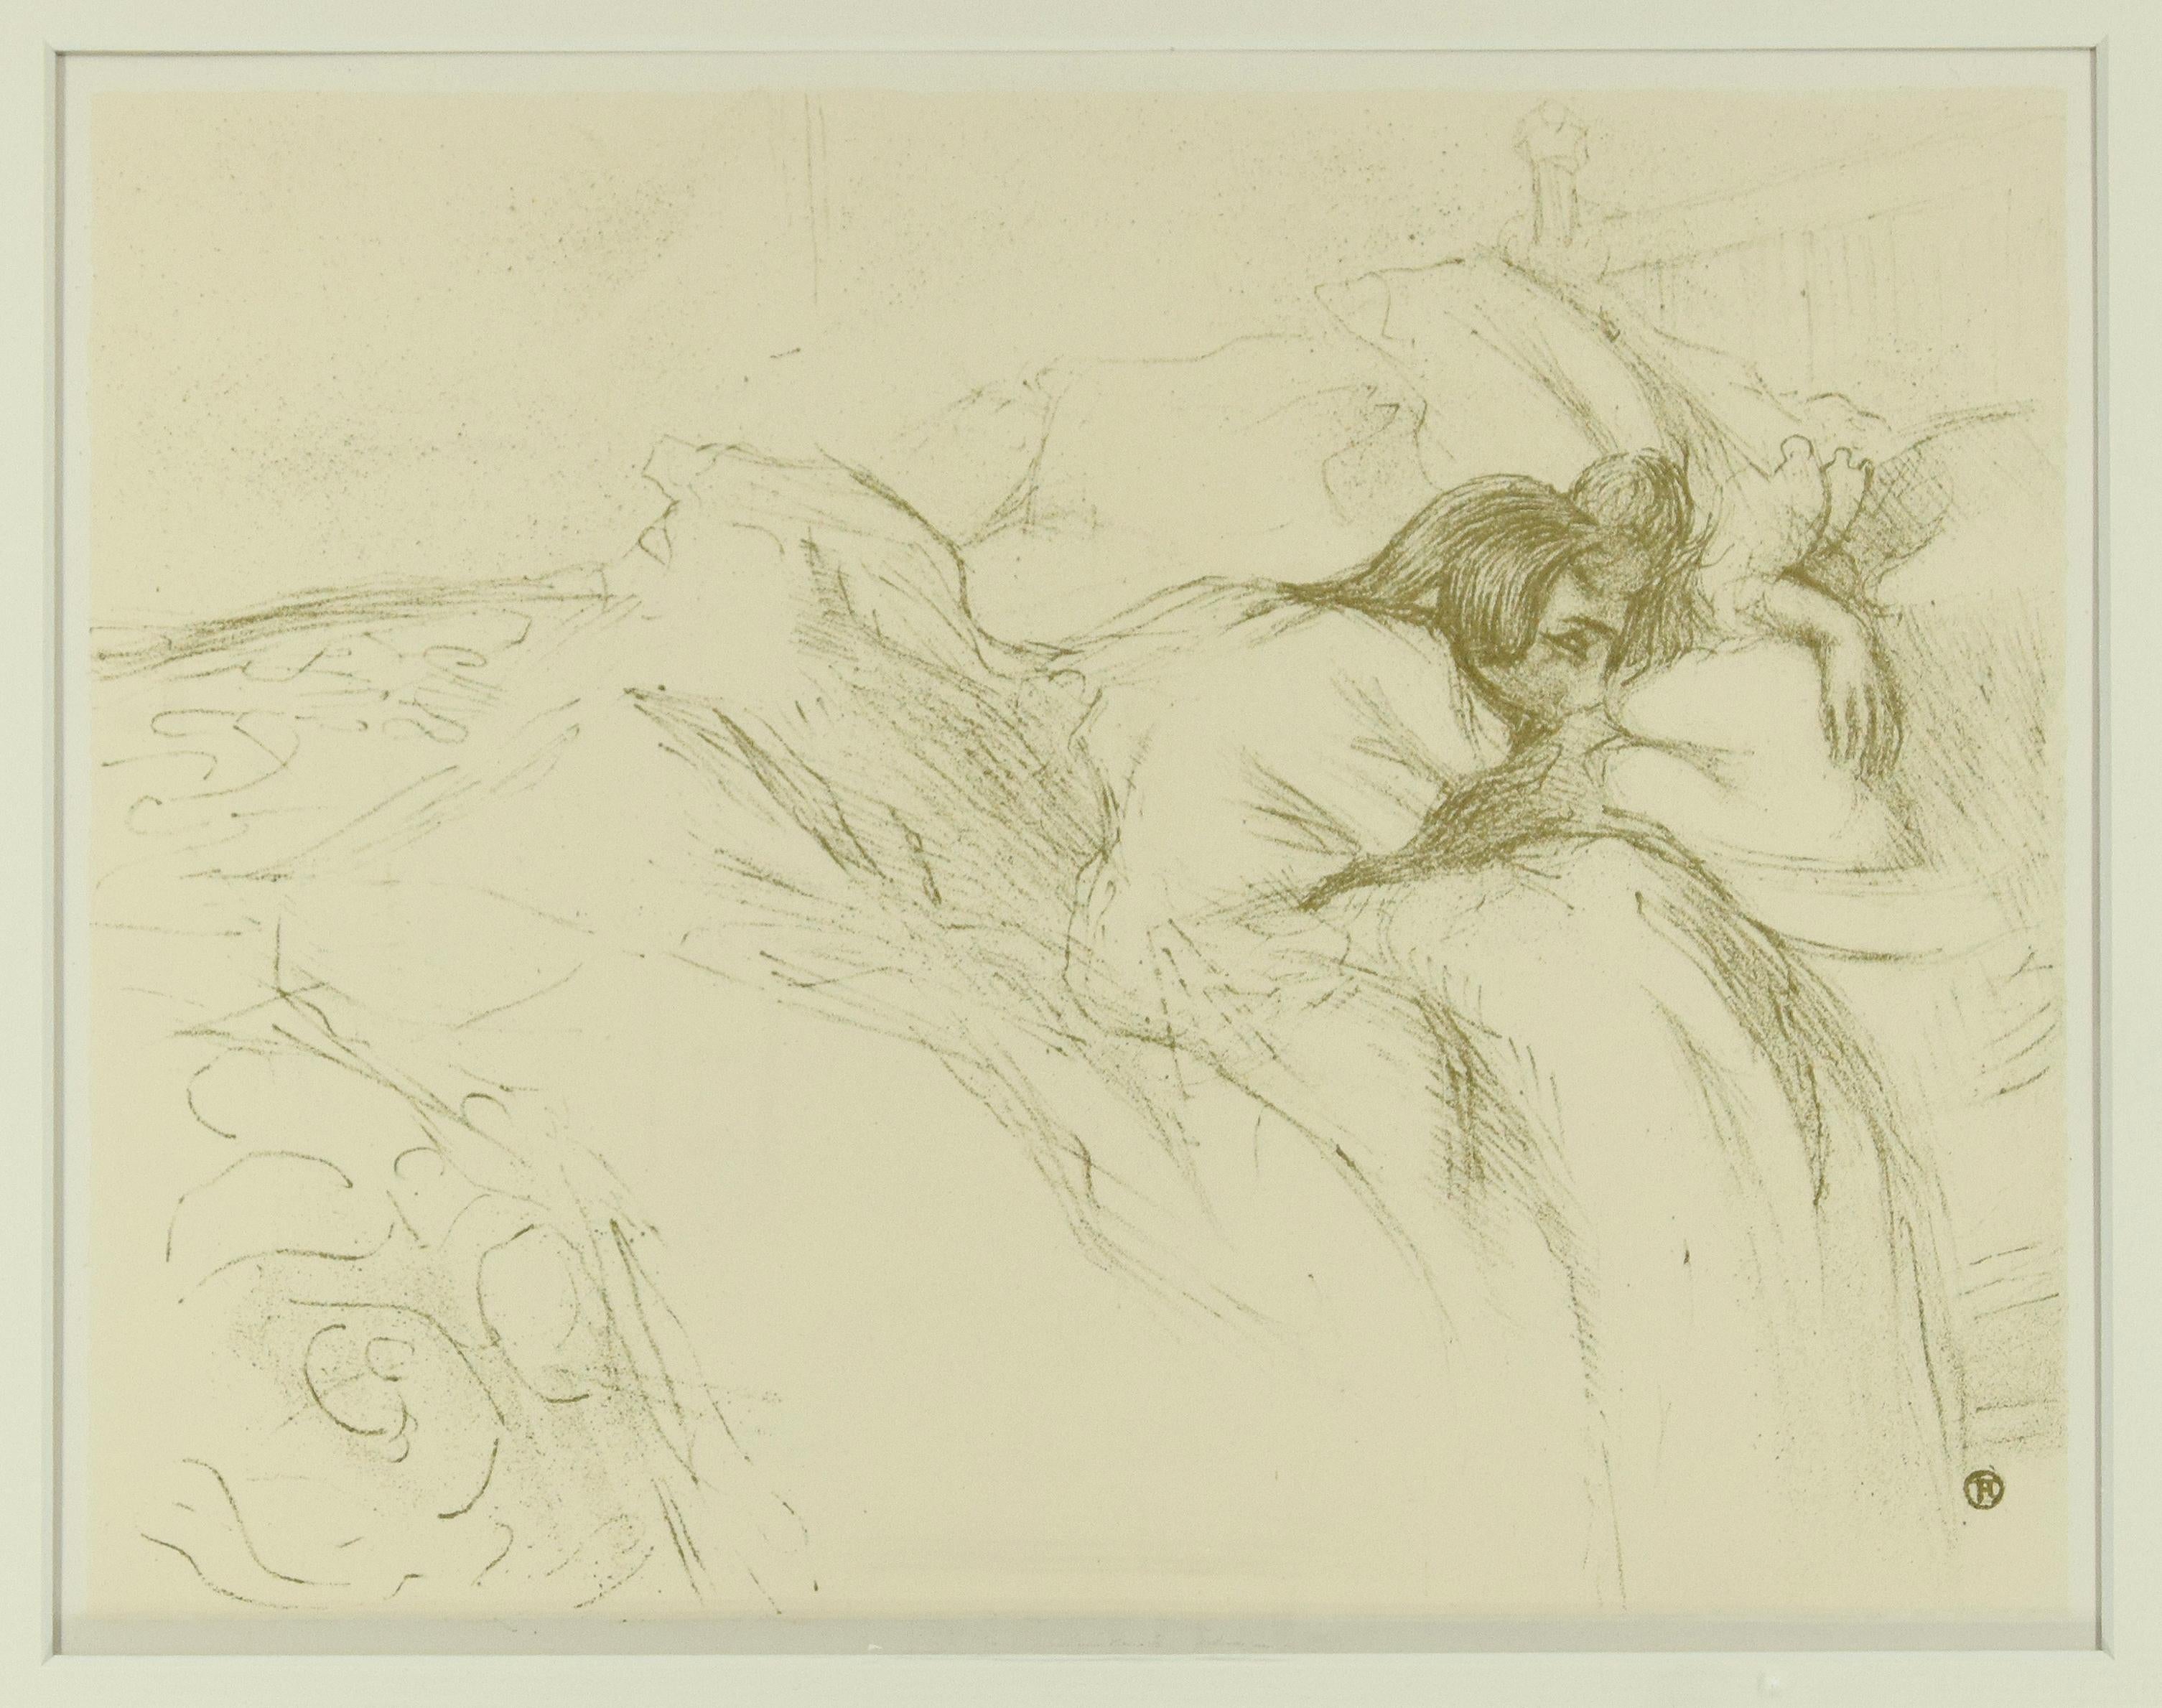 Henri de Toulouse-Lautrec Figurative Print - Woman Waking Up in Bed - Original Lithograph After H de Toulouse-Lautrec 